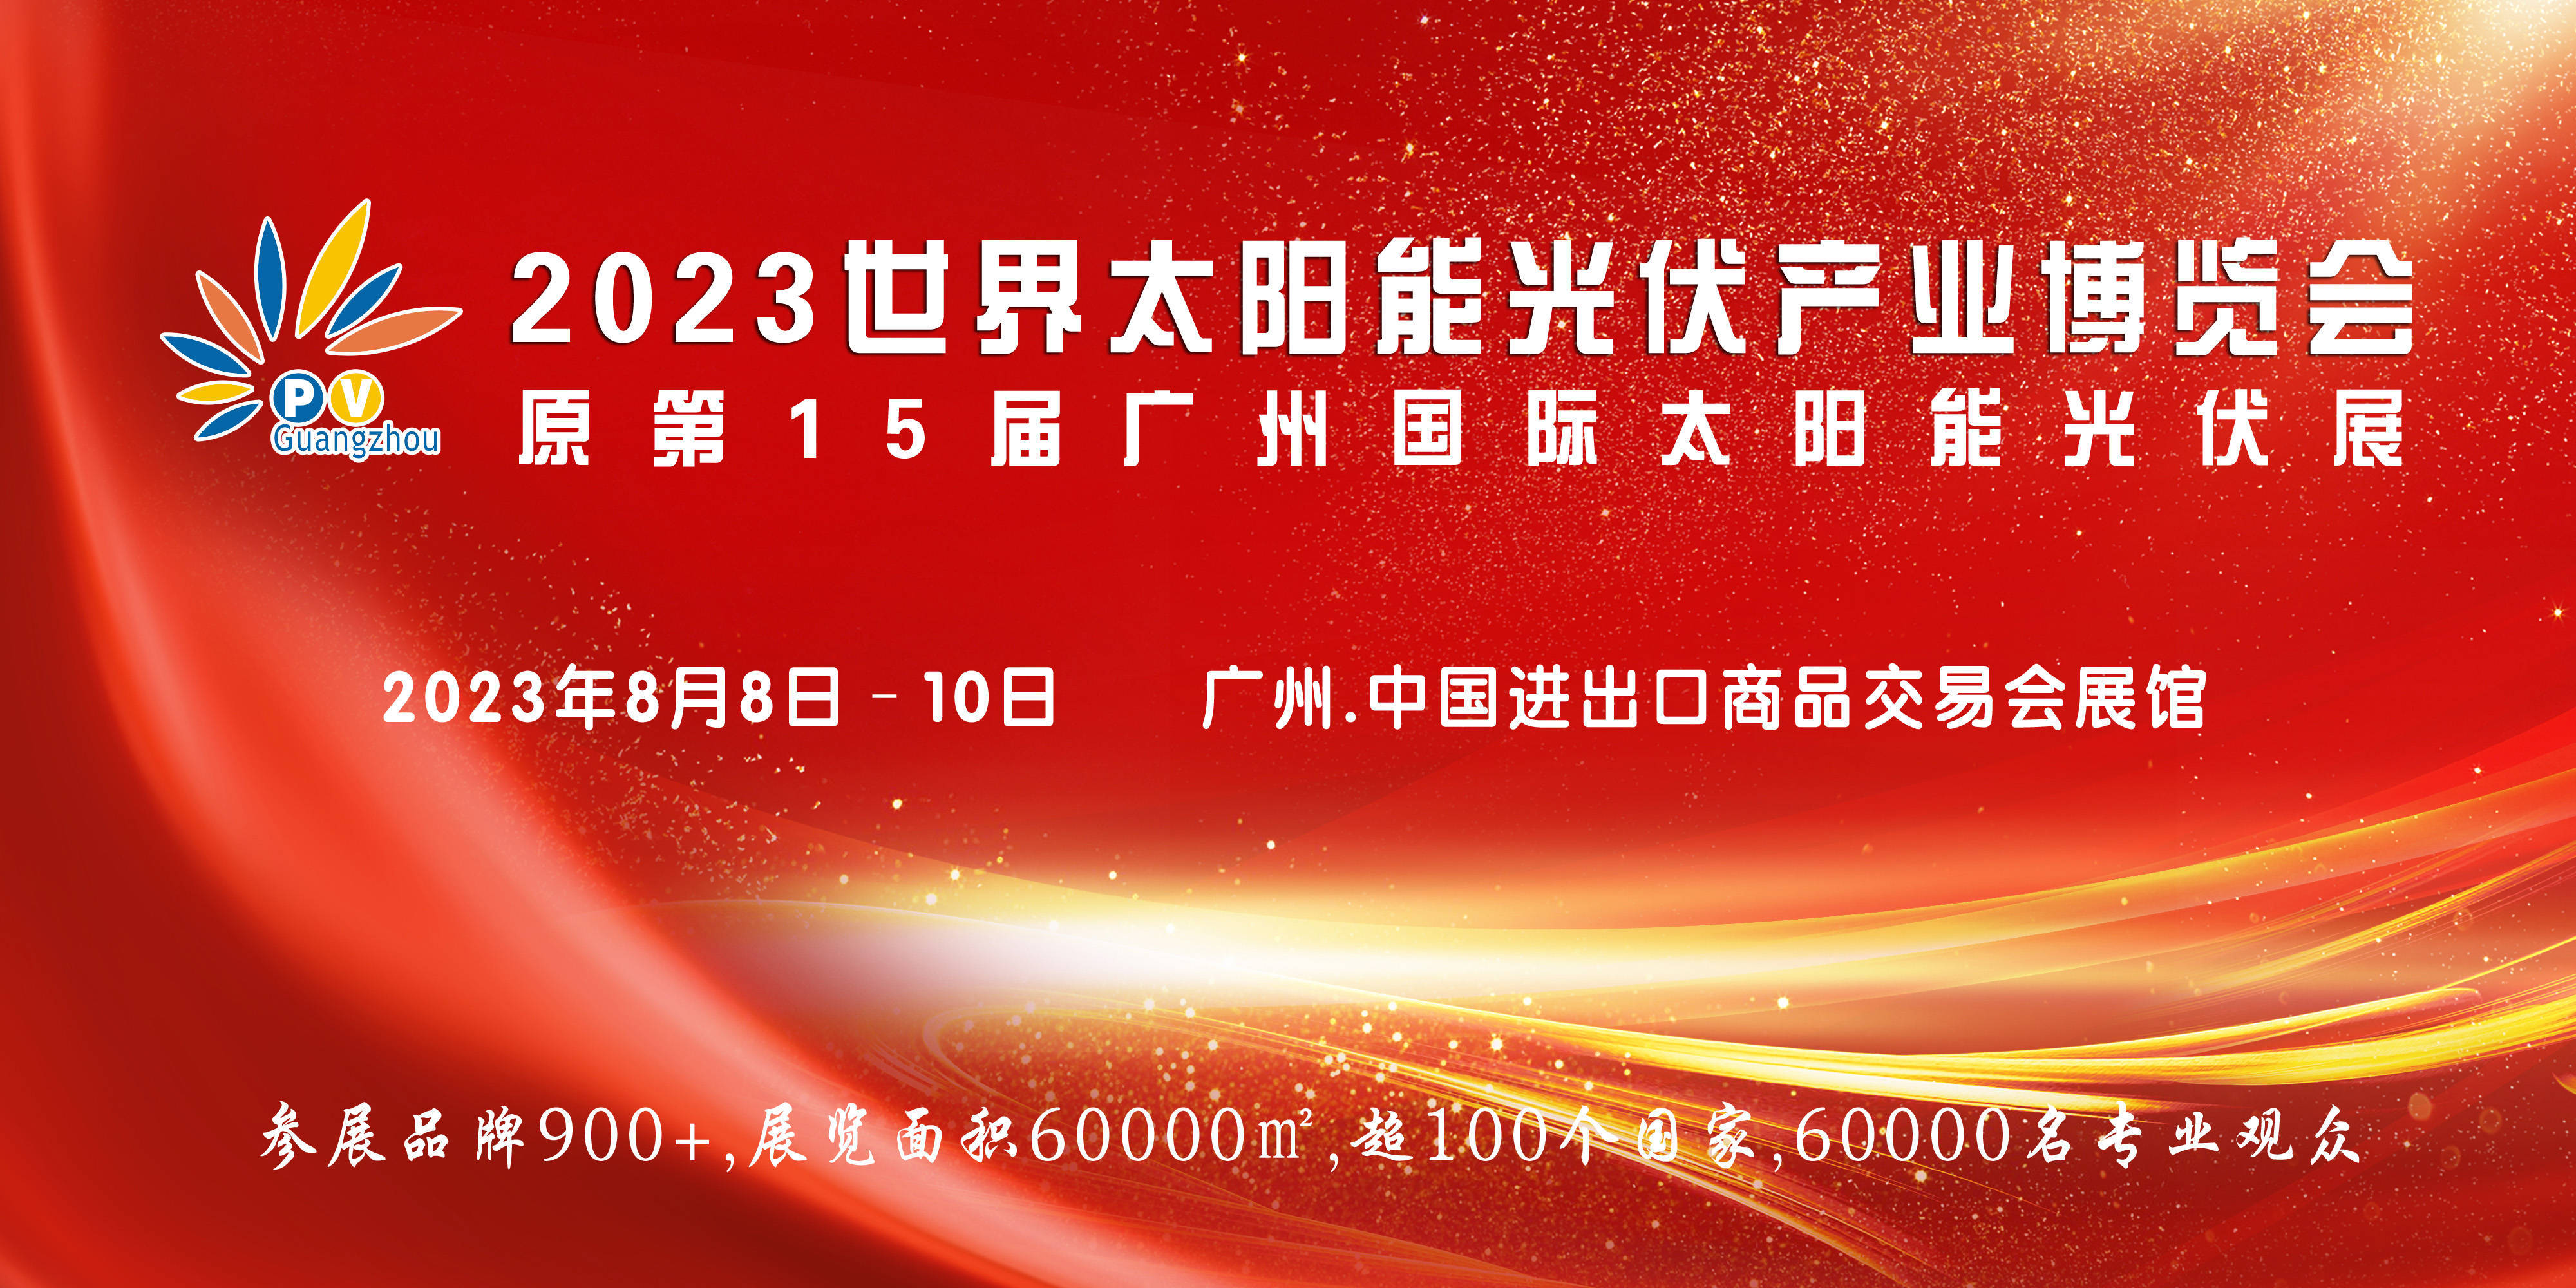 2023世界太阳能光伏产业博览会（原第15届广州国际太阳能光伏展）将于8月广州举行